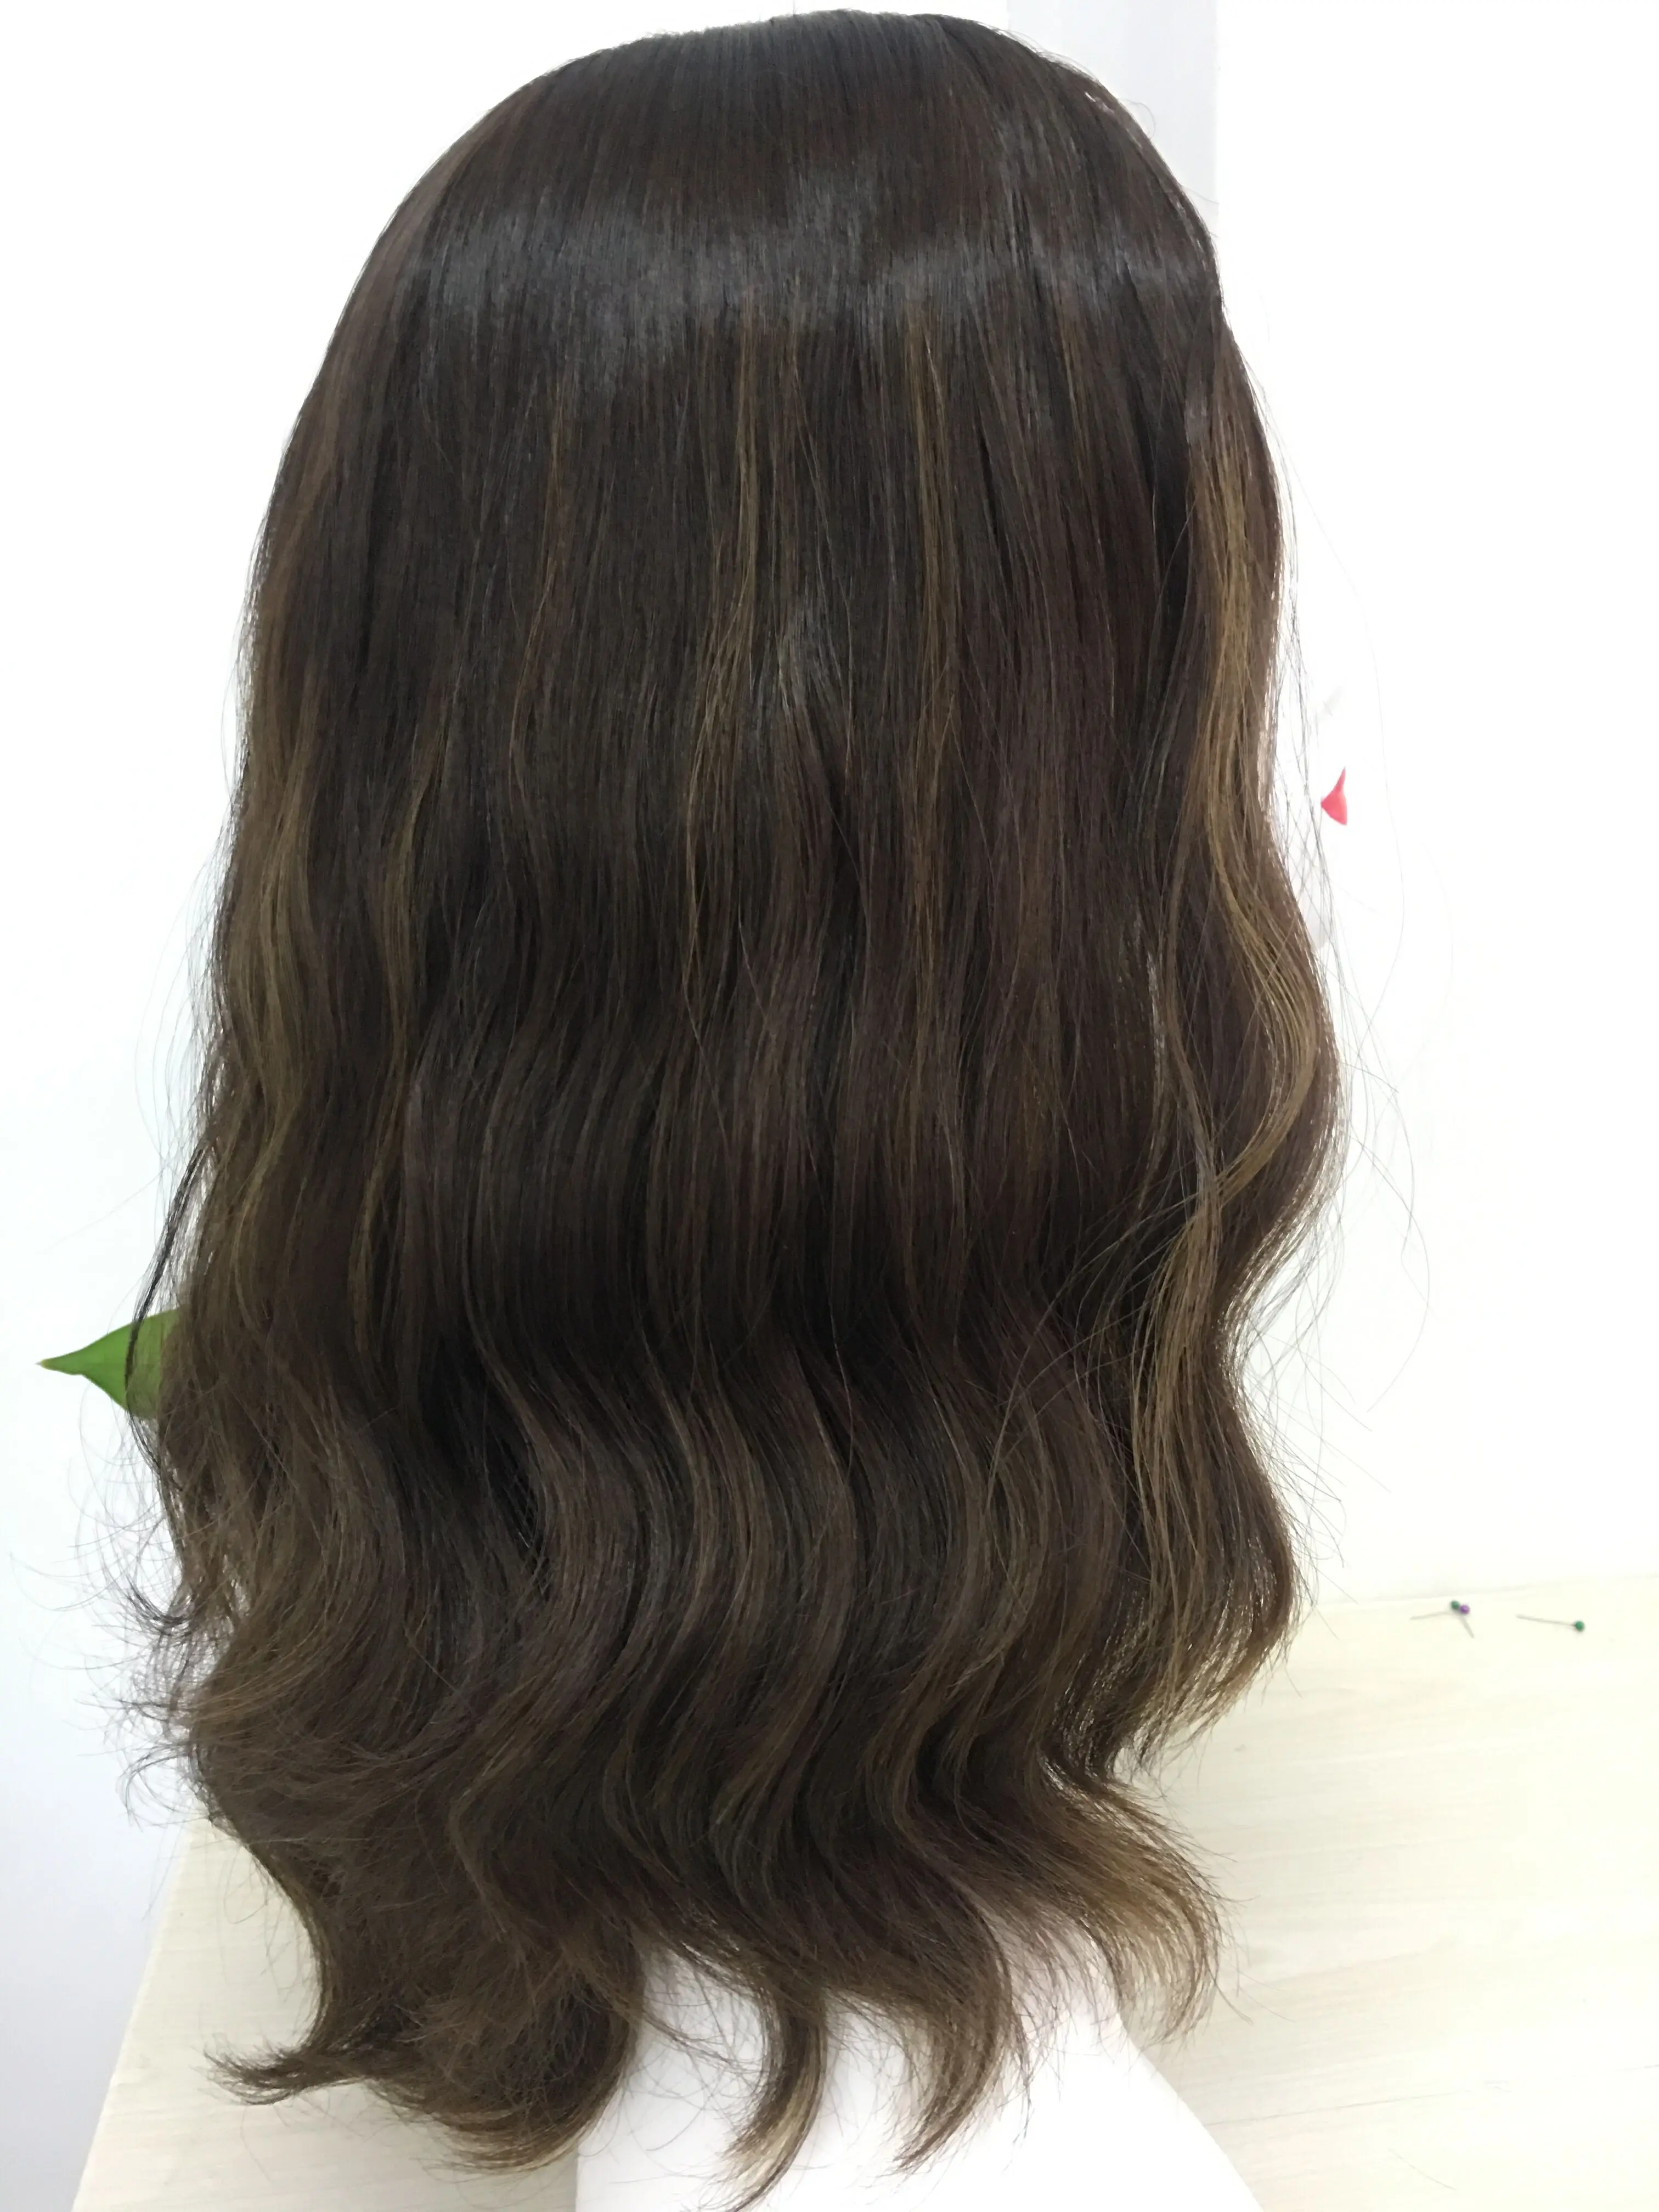 Tsingtaowigs изготовленные на заказ европейские девственные волосы необработанные волосы волнистые еврейский парик Лучшие парики Sheitels